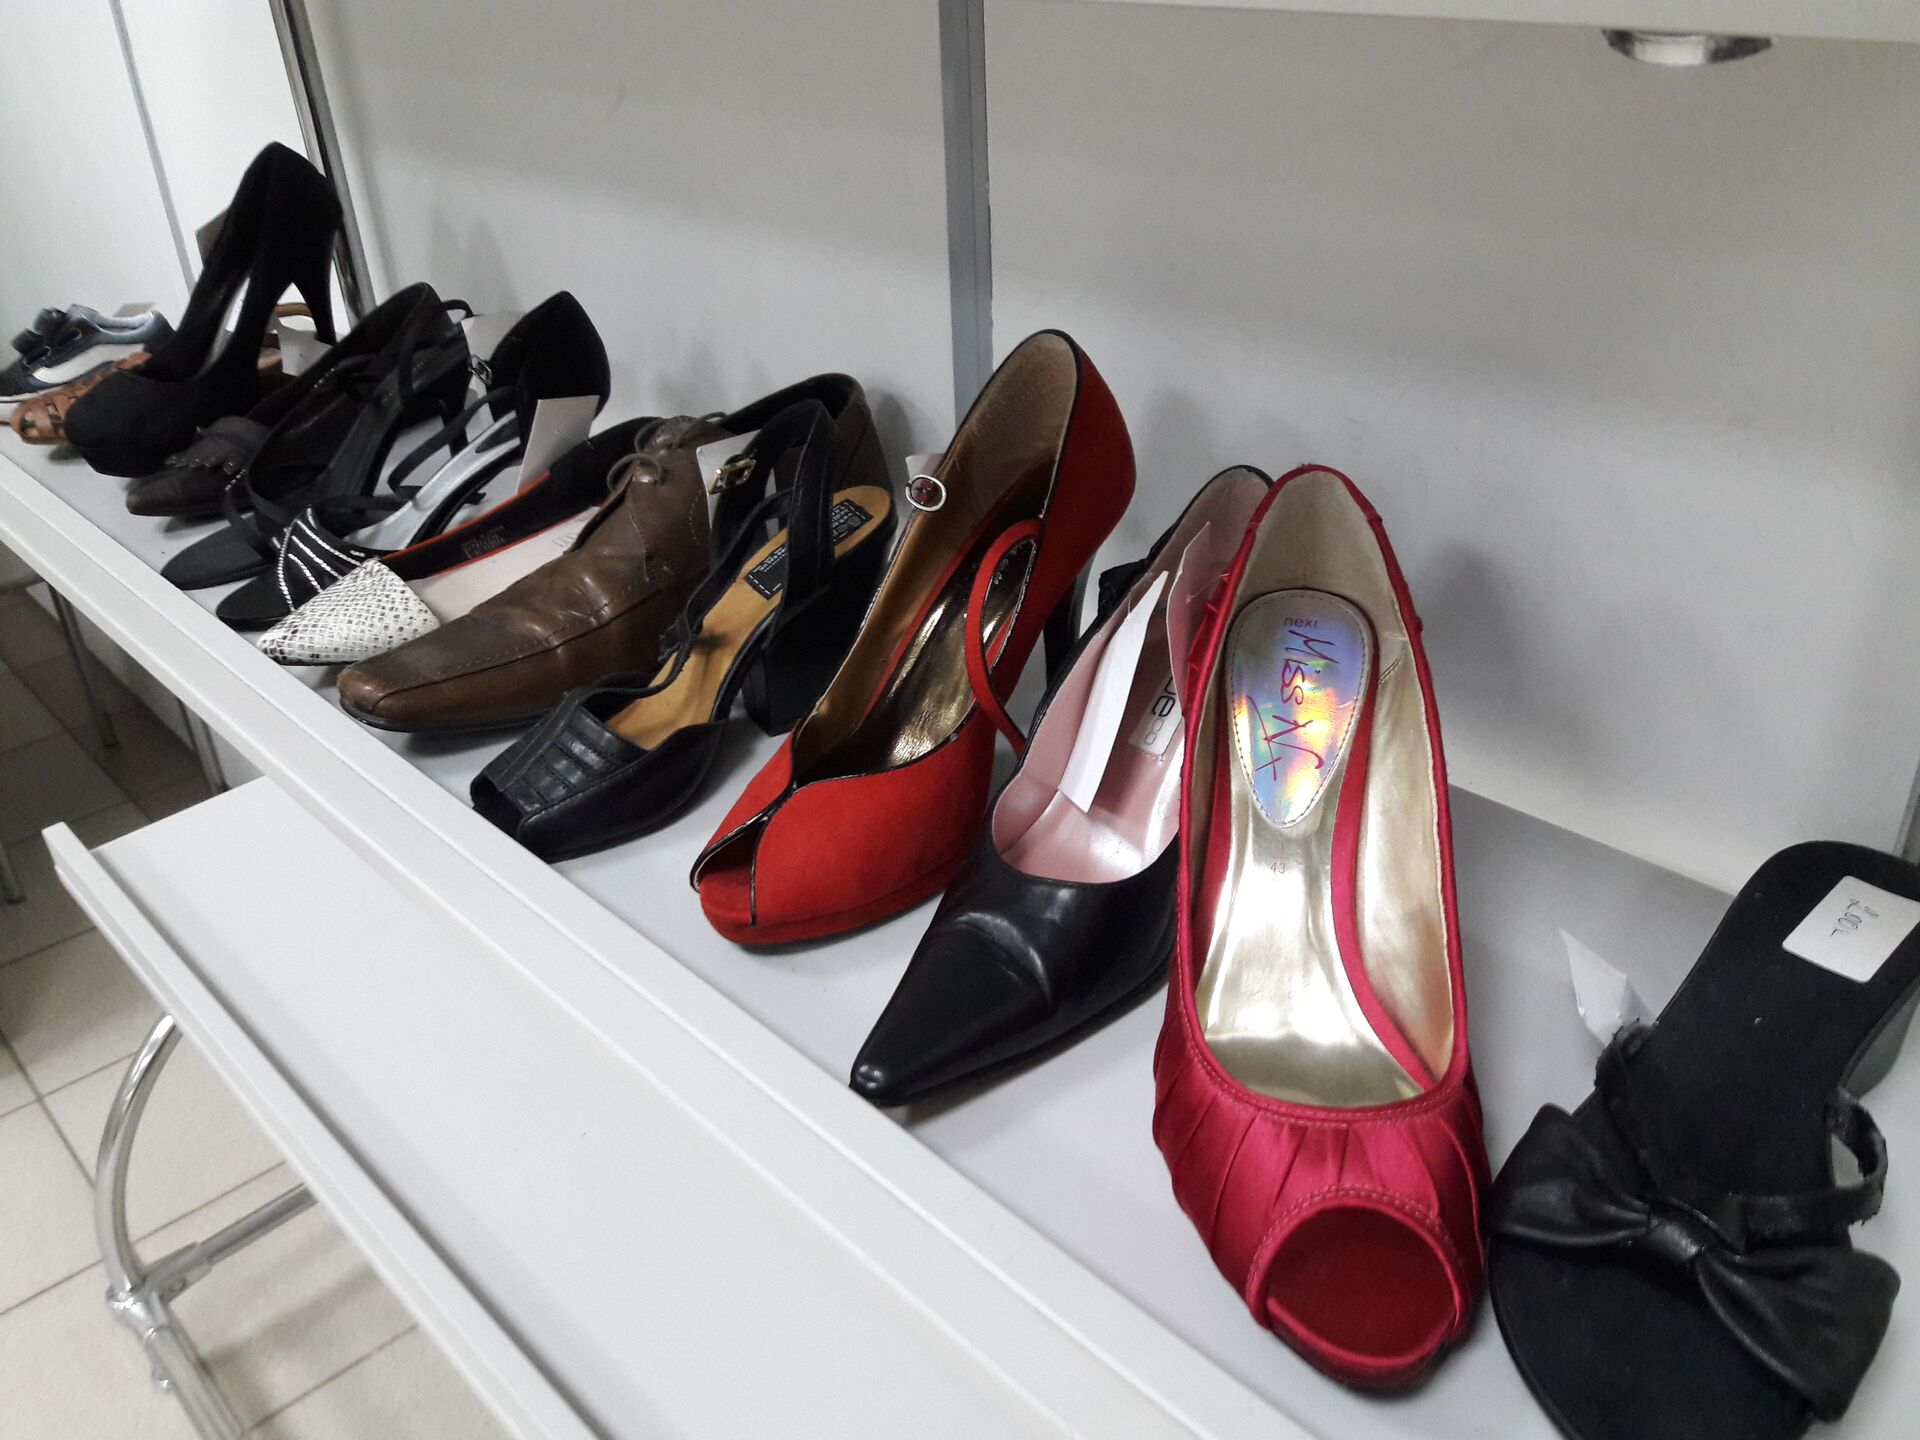 Как мастера сервиса по реставрации обуви справляются с царапинами на лакированных туфлях